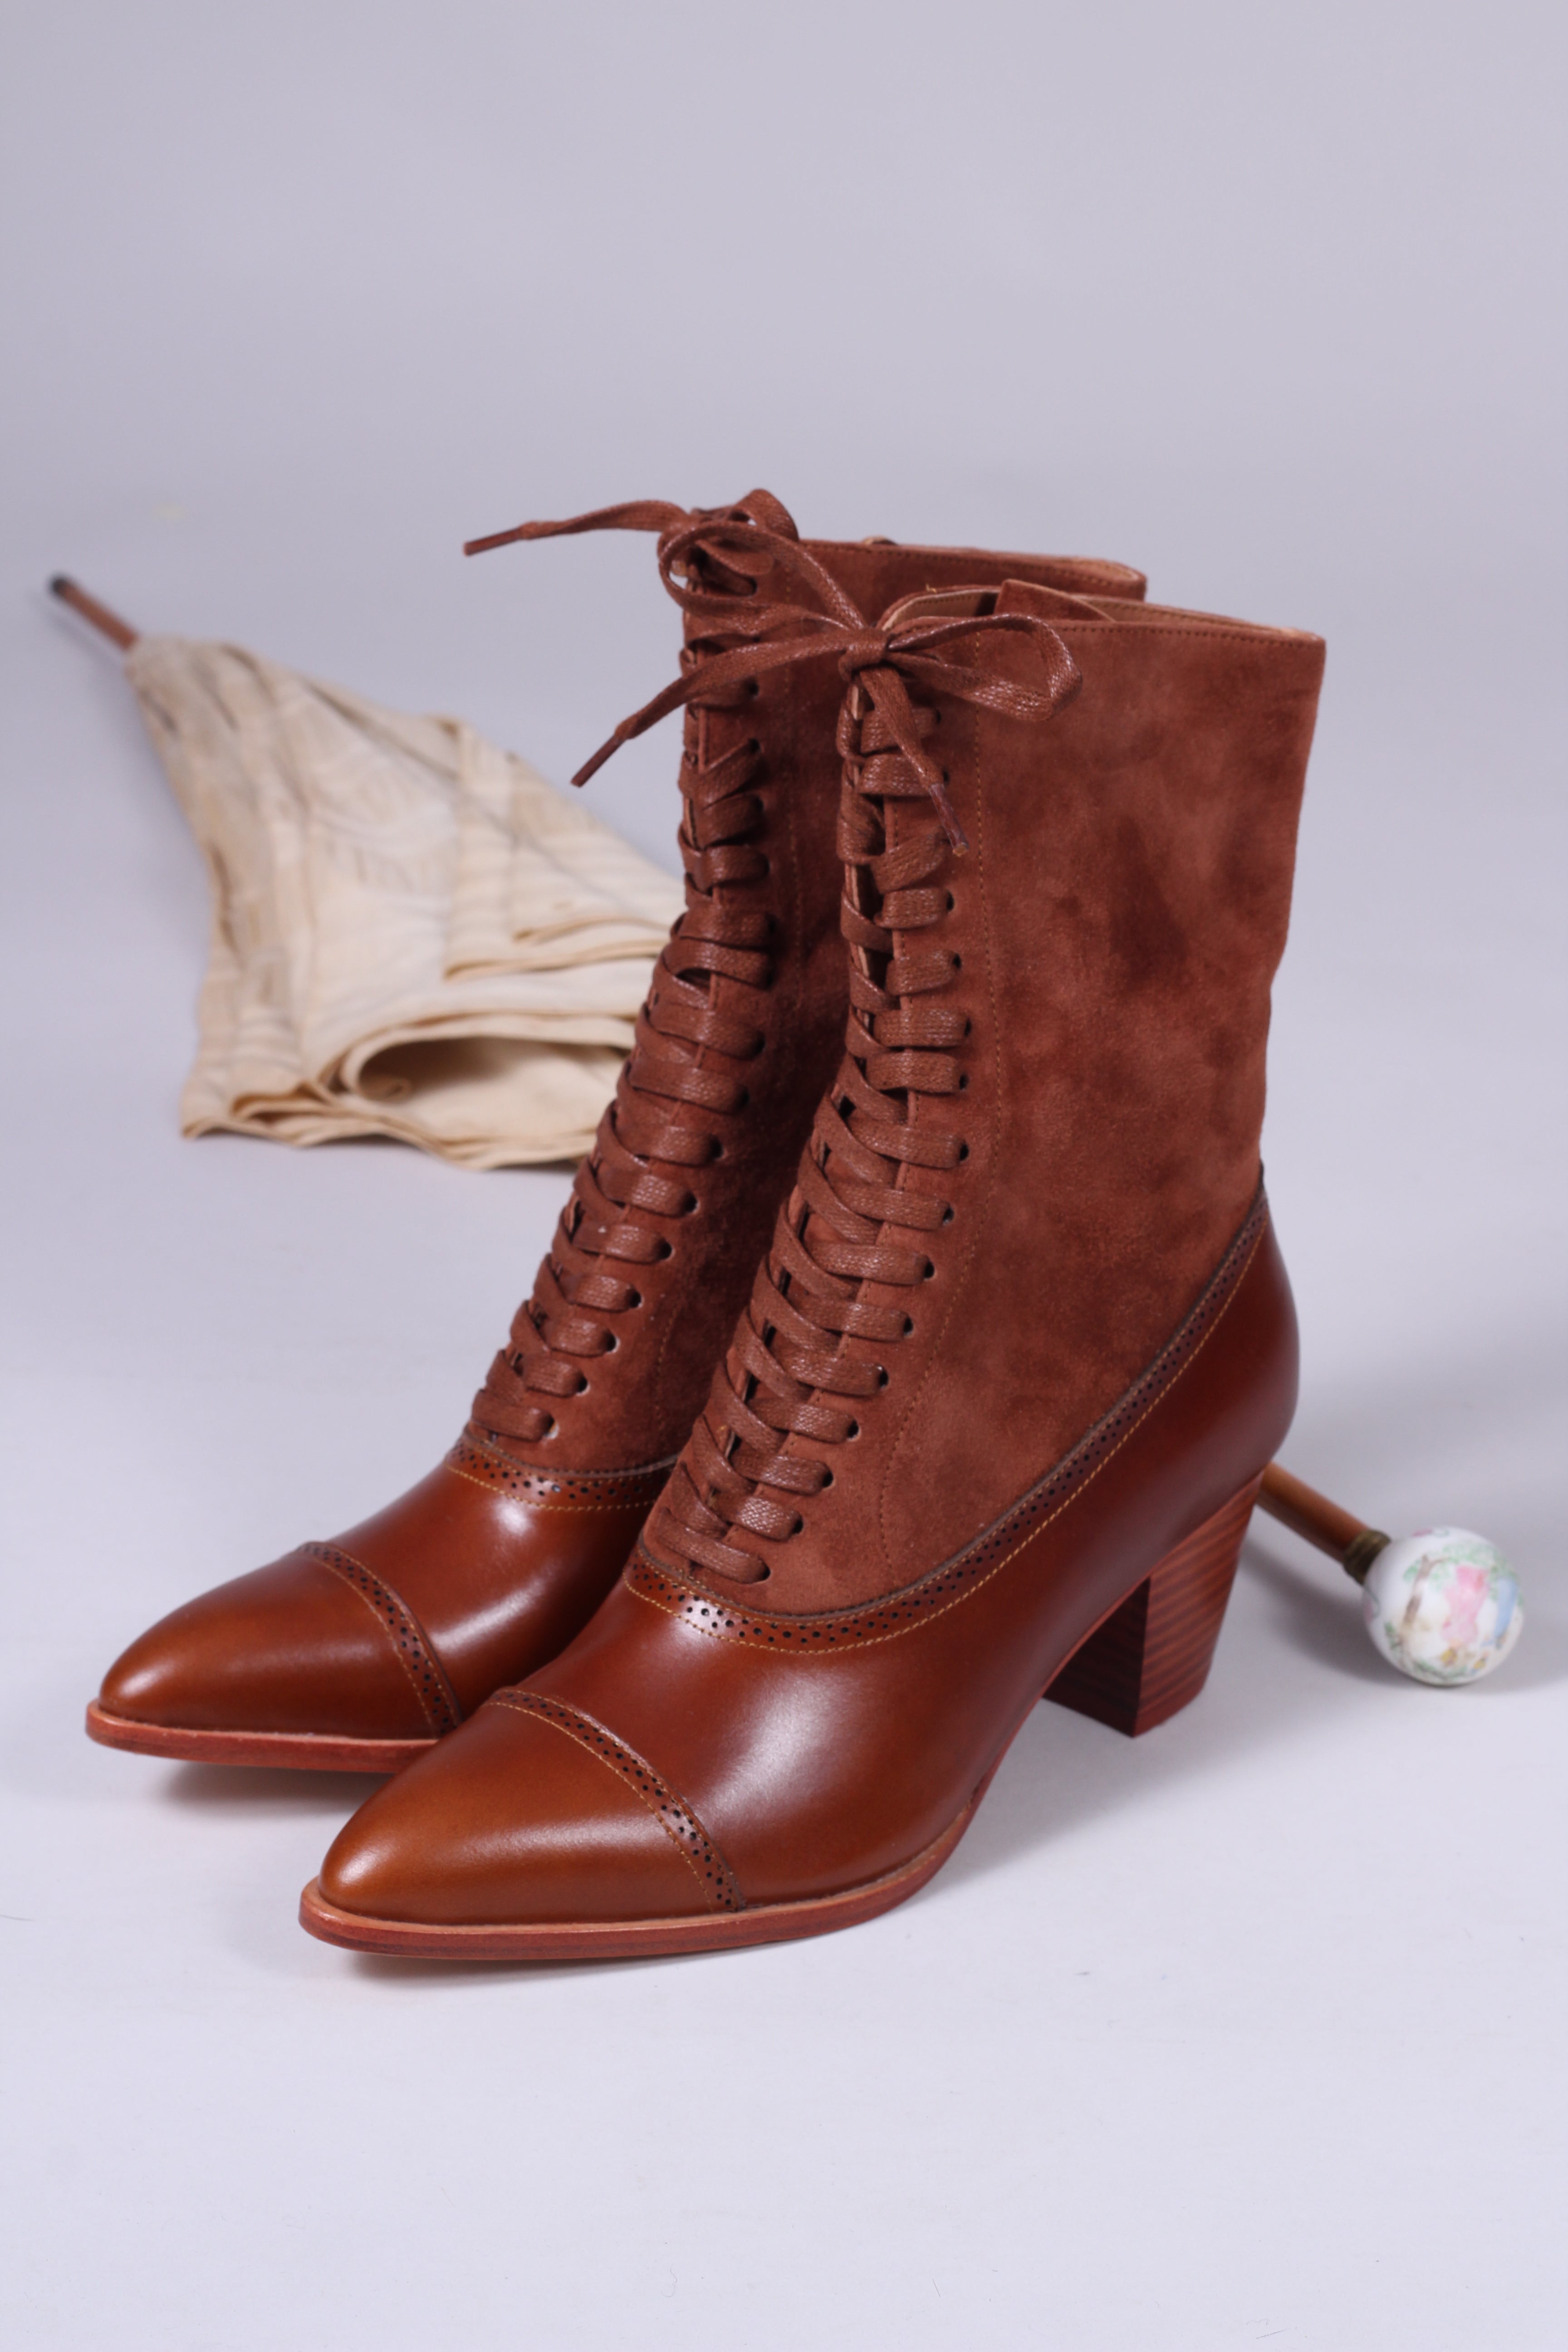 Edwardianske støvler 1900-1910 cognac brun - Victoria – Vintage Divine